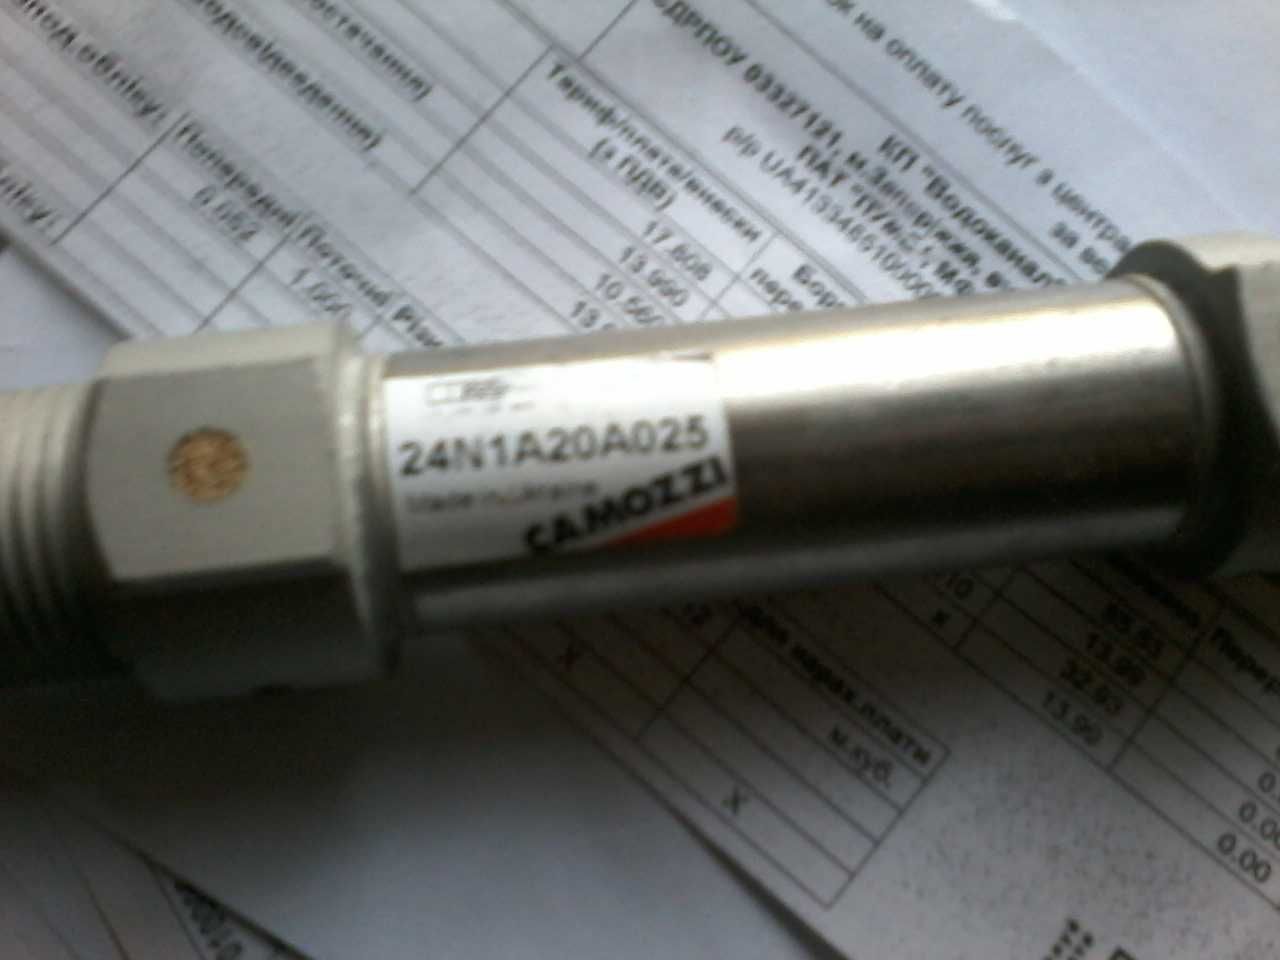 Мініциліндр пневматичний Camozzi 24N1A20A025 d-20мм хід поршня - 25мм